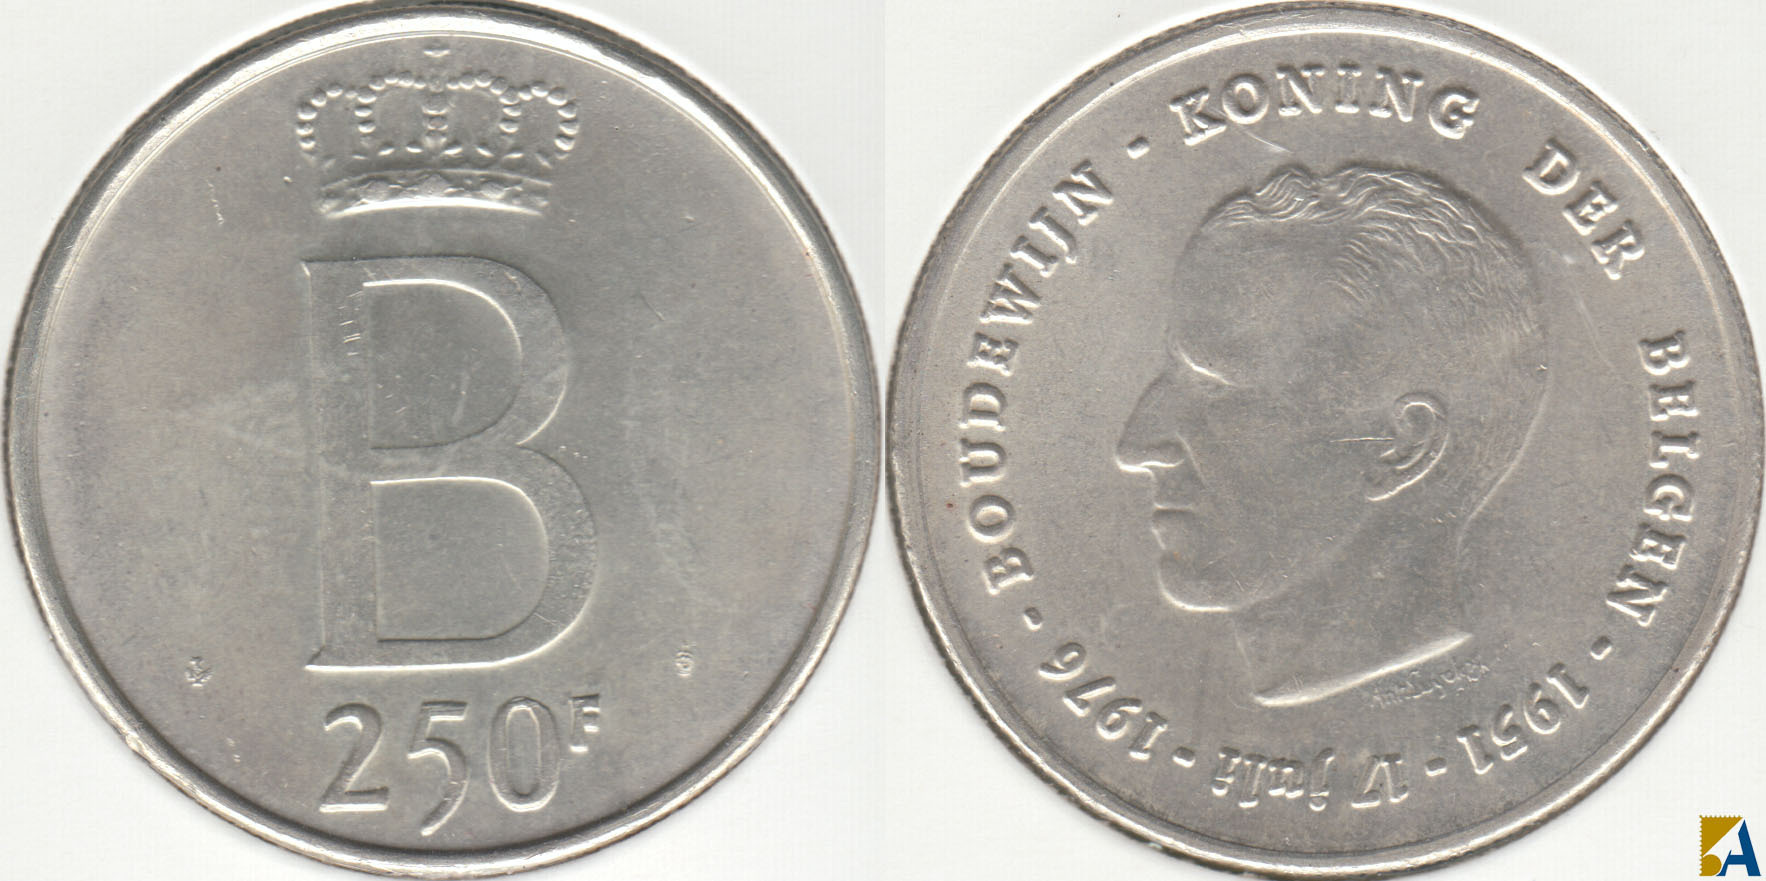 BELGICA - BELGIUM. 250 FRANCOS (FRANCS) DE 1976. PLATA 0.835. (5)